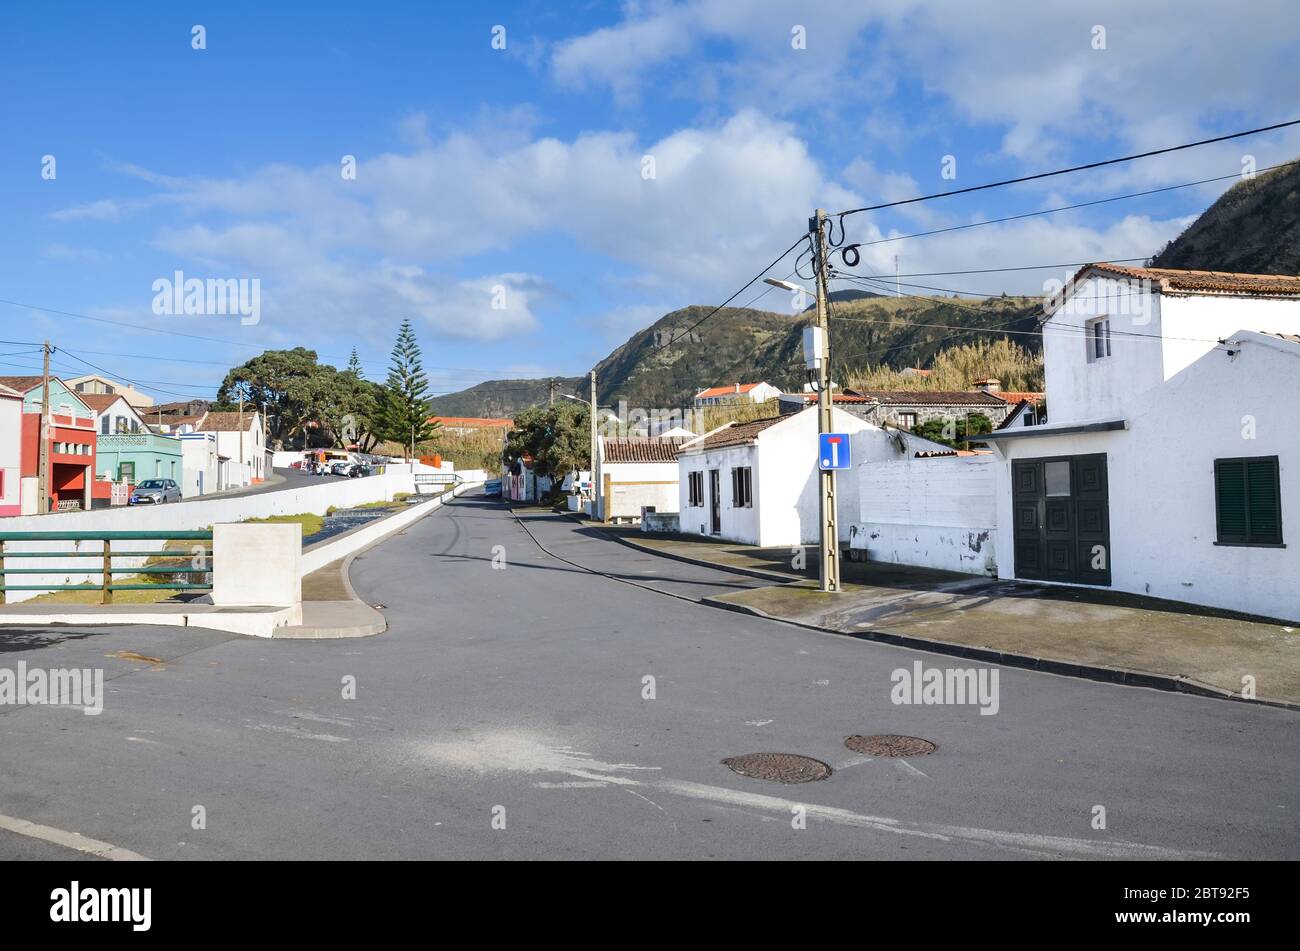 Mosteiros, Azoren, Portugal - 12. Jan 2020: Blick auf das traditionelle portugiesische Dorf auf den Azoren. Häuser mit weißen Fassaden, Asphaltstraße, Stromleitung. Horizontales Foto. Stockfoto